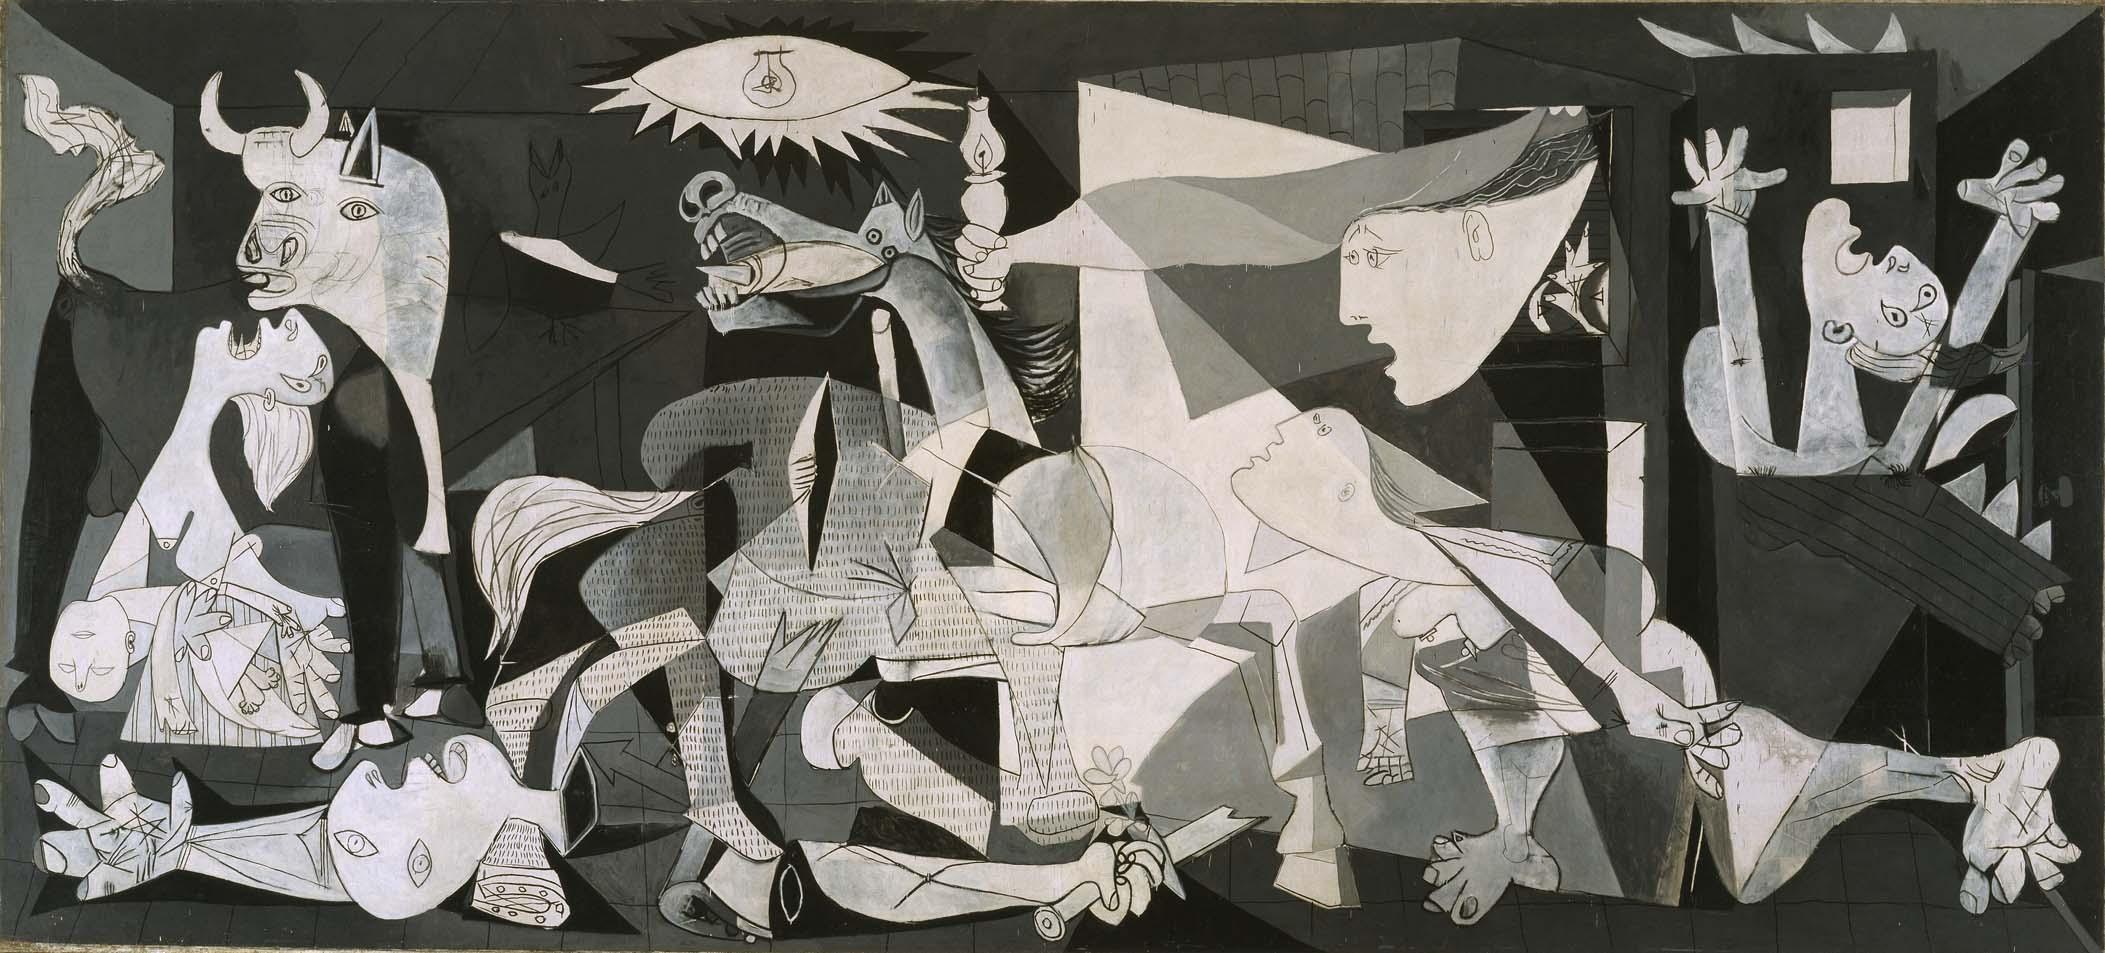 Guernica, Picasso